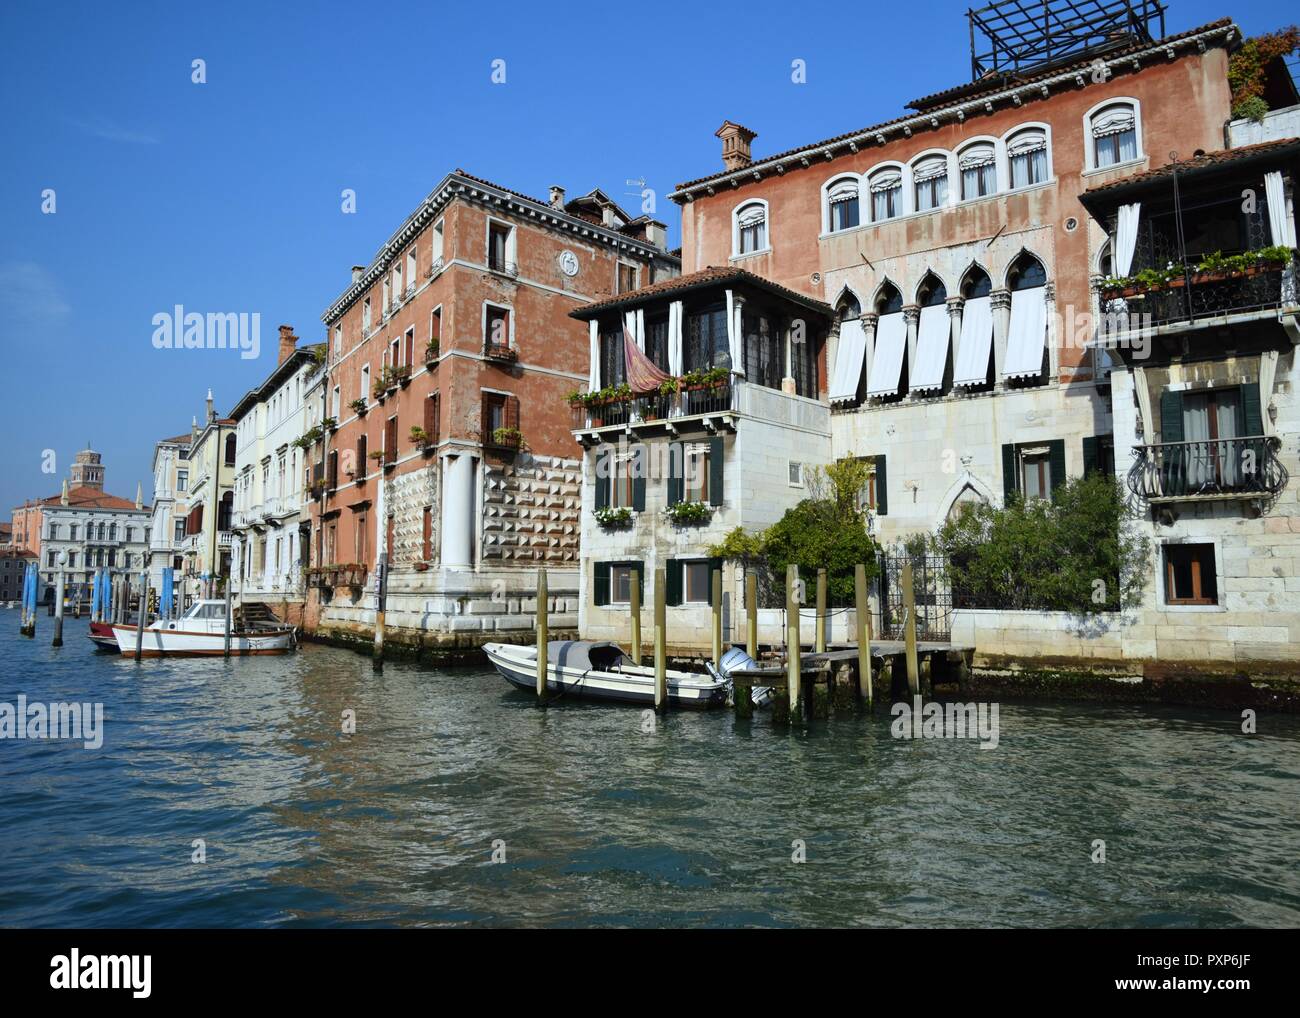 Travel Photography Venice Italy Stock Photo